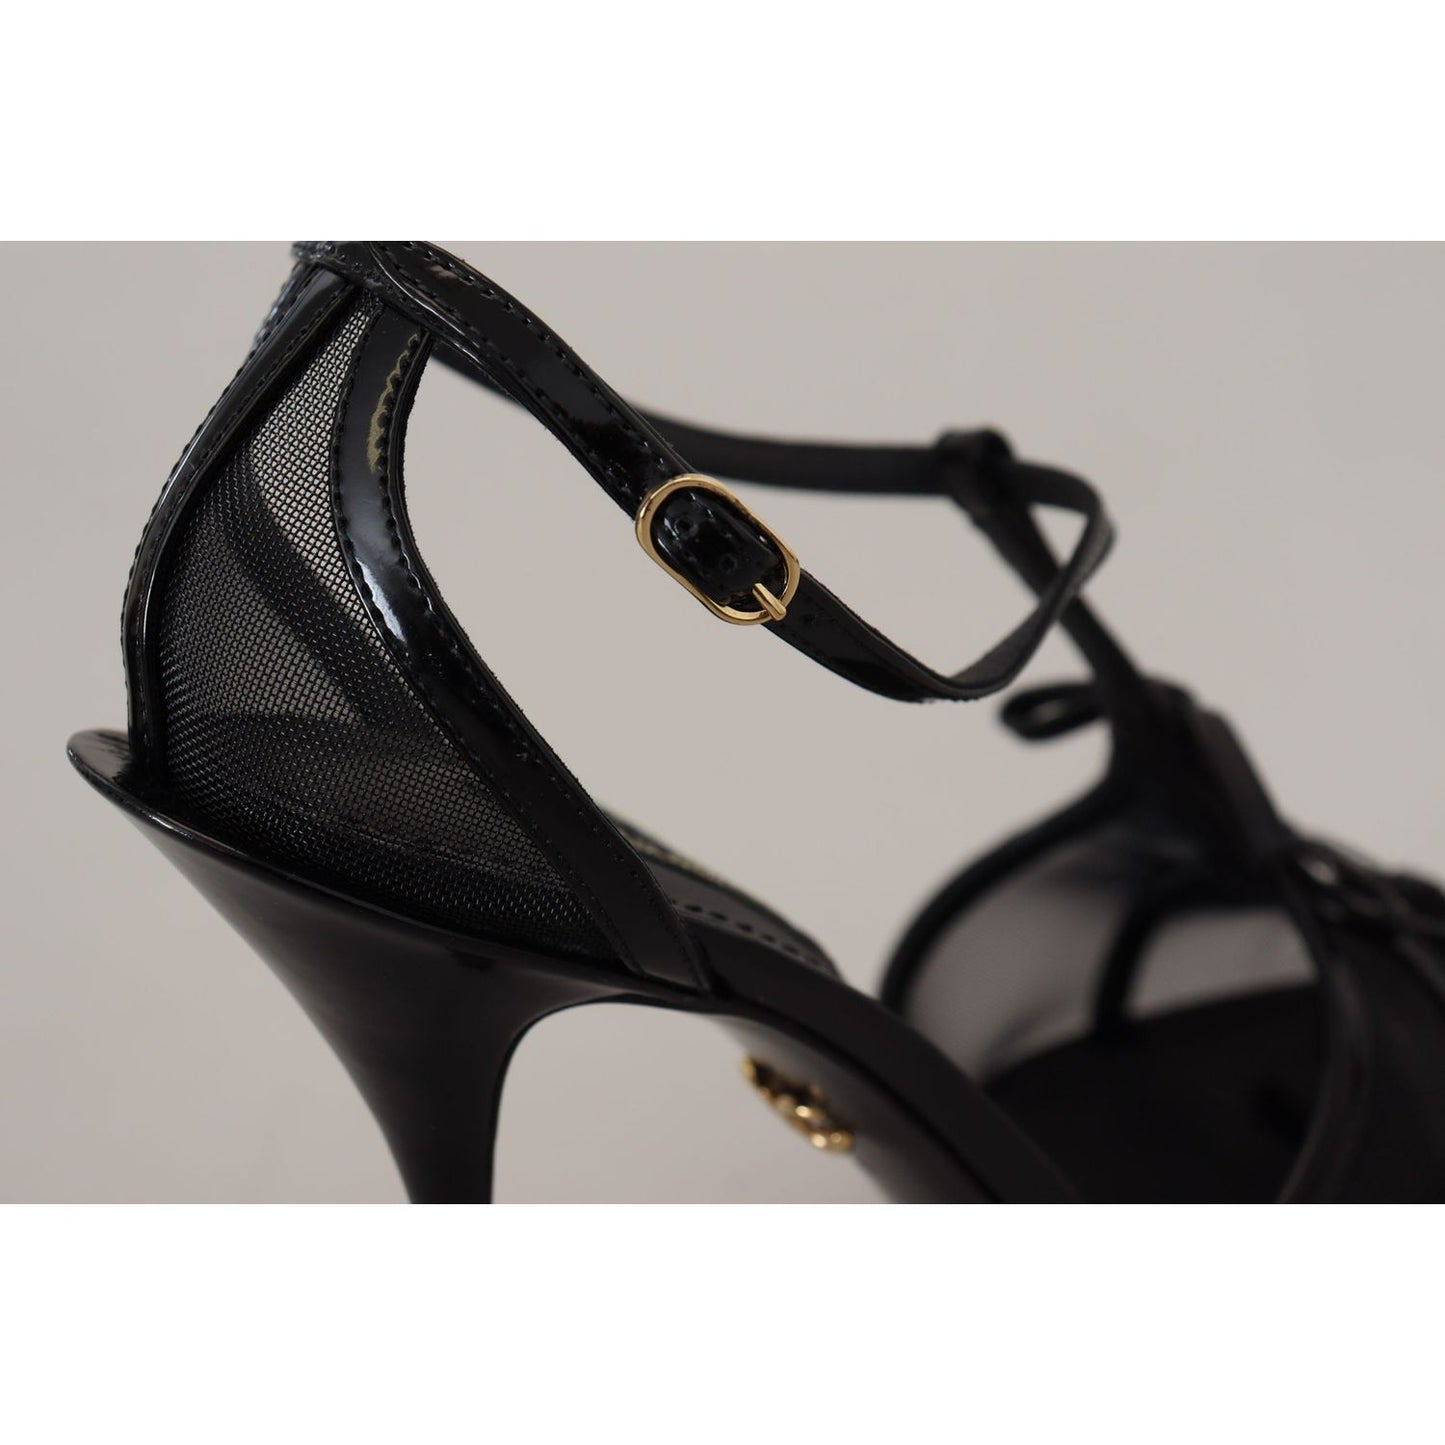 Dolce & Gabbana Elegant Black Stiletto Heeled Sandals elegant-black-stiletto-heeled-sandals